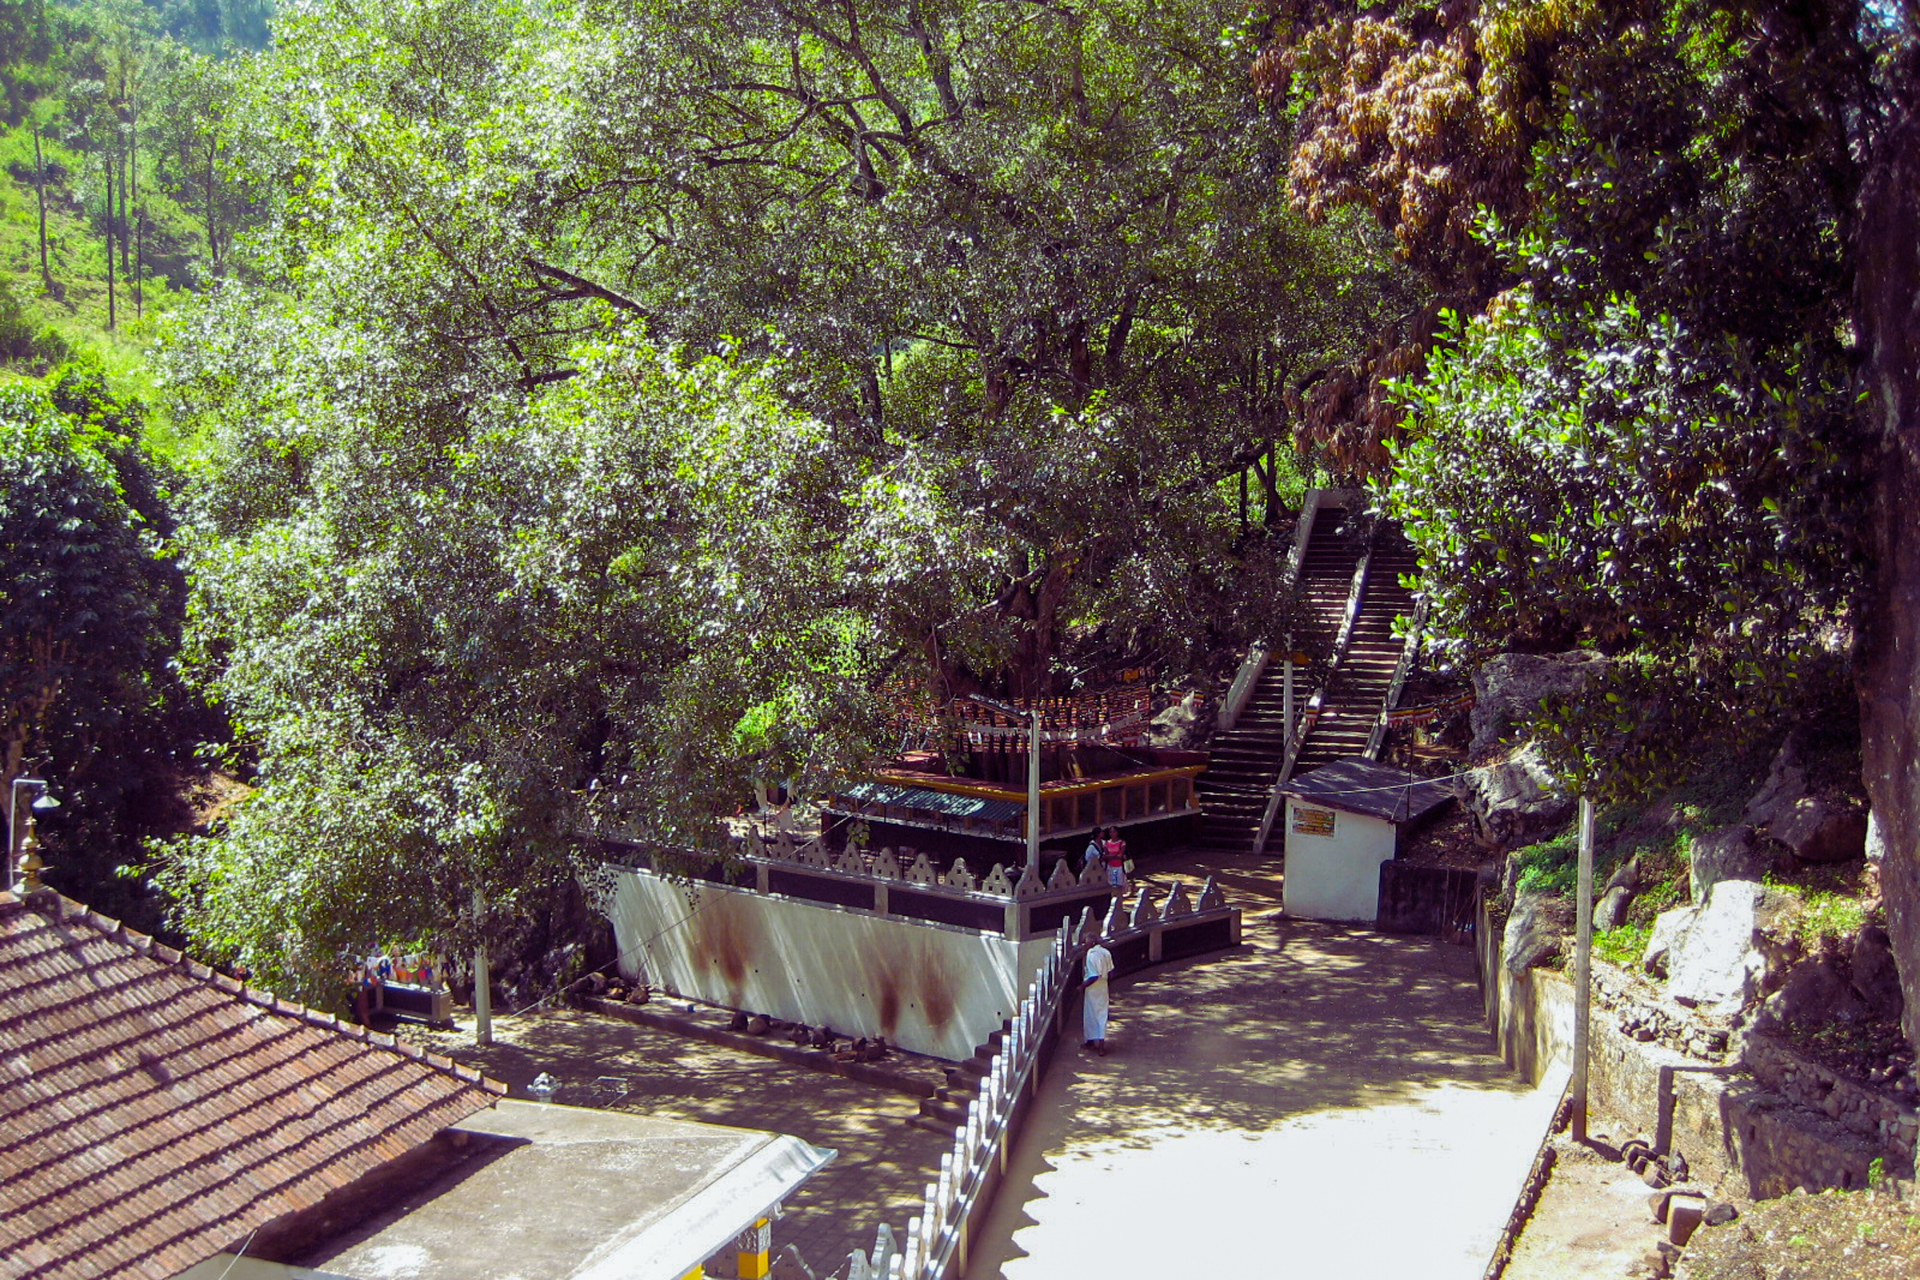 The Bo tree and surroundings at the Dhowa raja maha viharaya